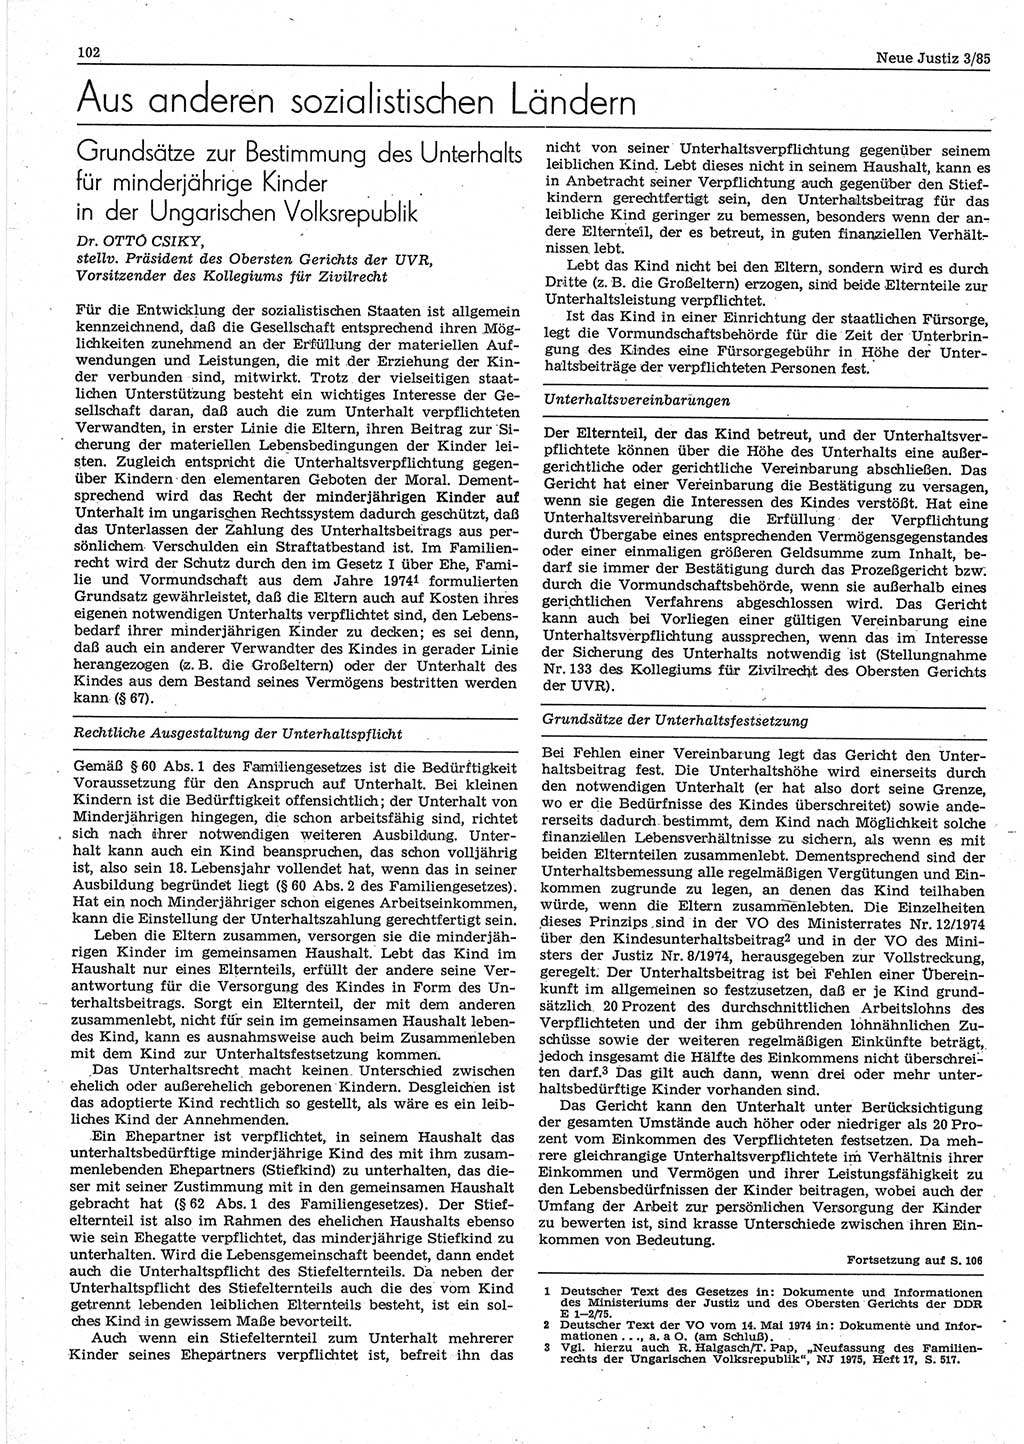 Neue Justiz (NJ), Zeitschrift für sozialistisches Recht und Gesetzlichkeit [Deutsche Demokratische Republik (DDR)], 39. Jahrgang 1985, Seite 102 (NJ DDR 1985, S. 102)